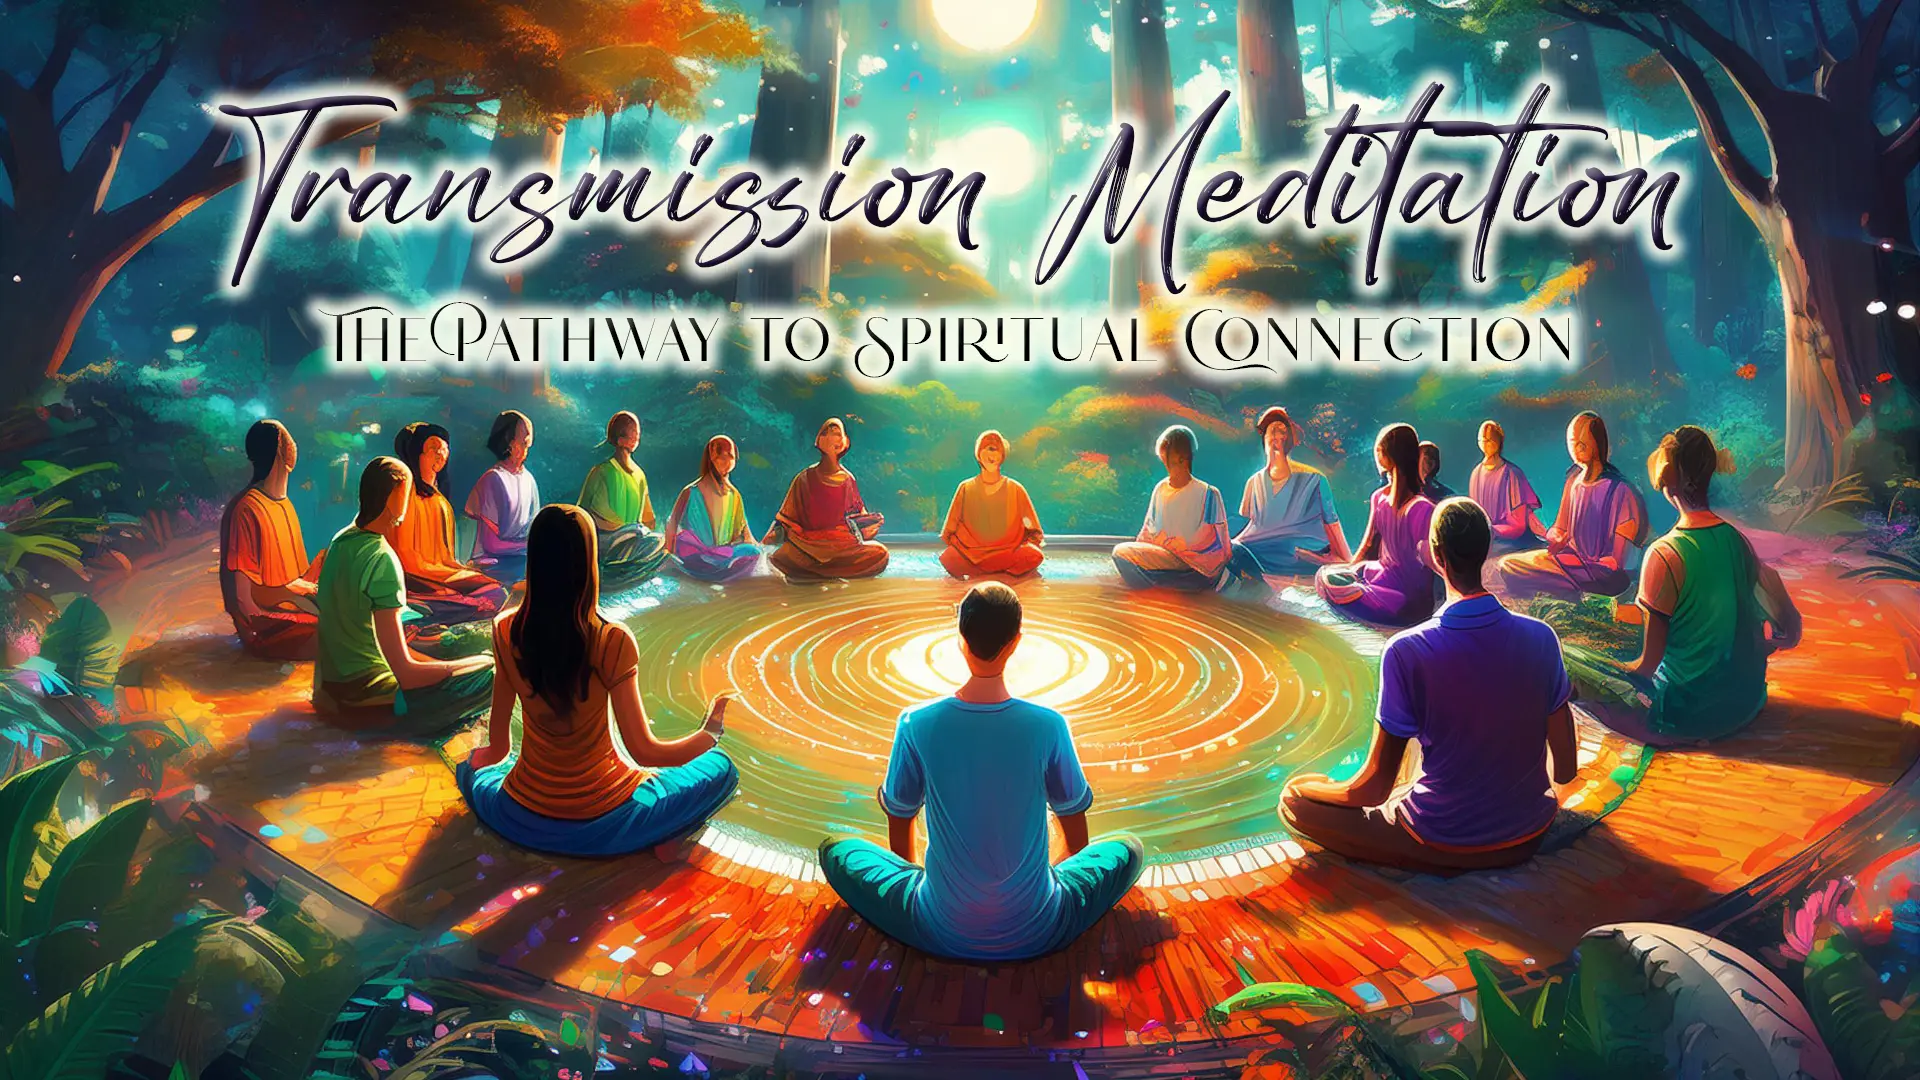 Transmission Meditation concept image for background